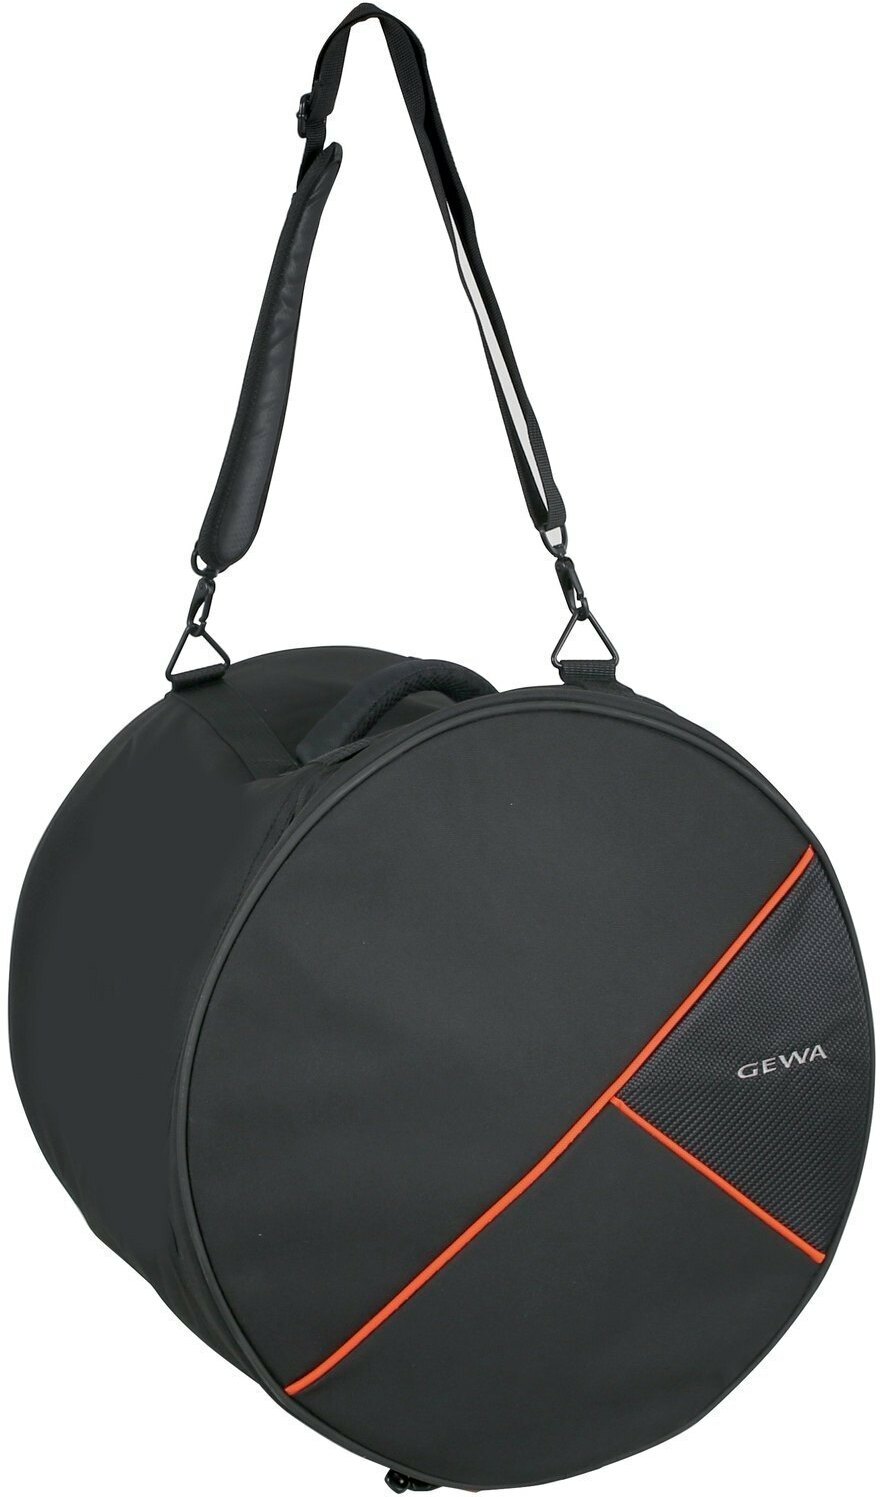 Gewa Premium Tom Bag 16x16 - Drum bag - Main picture